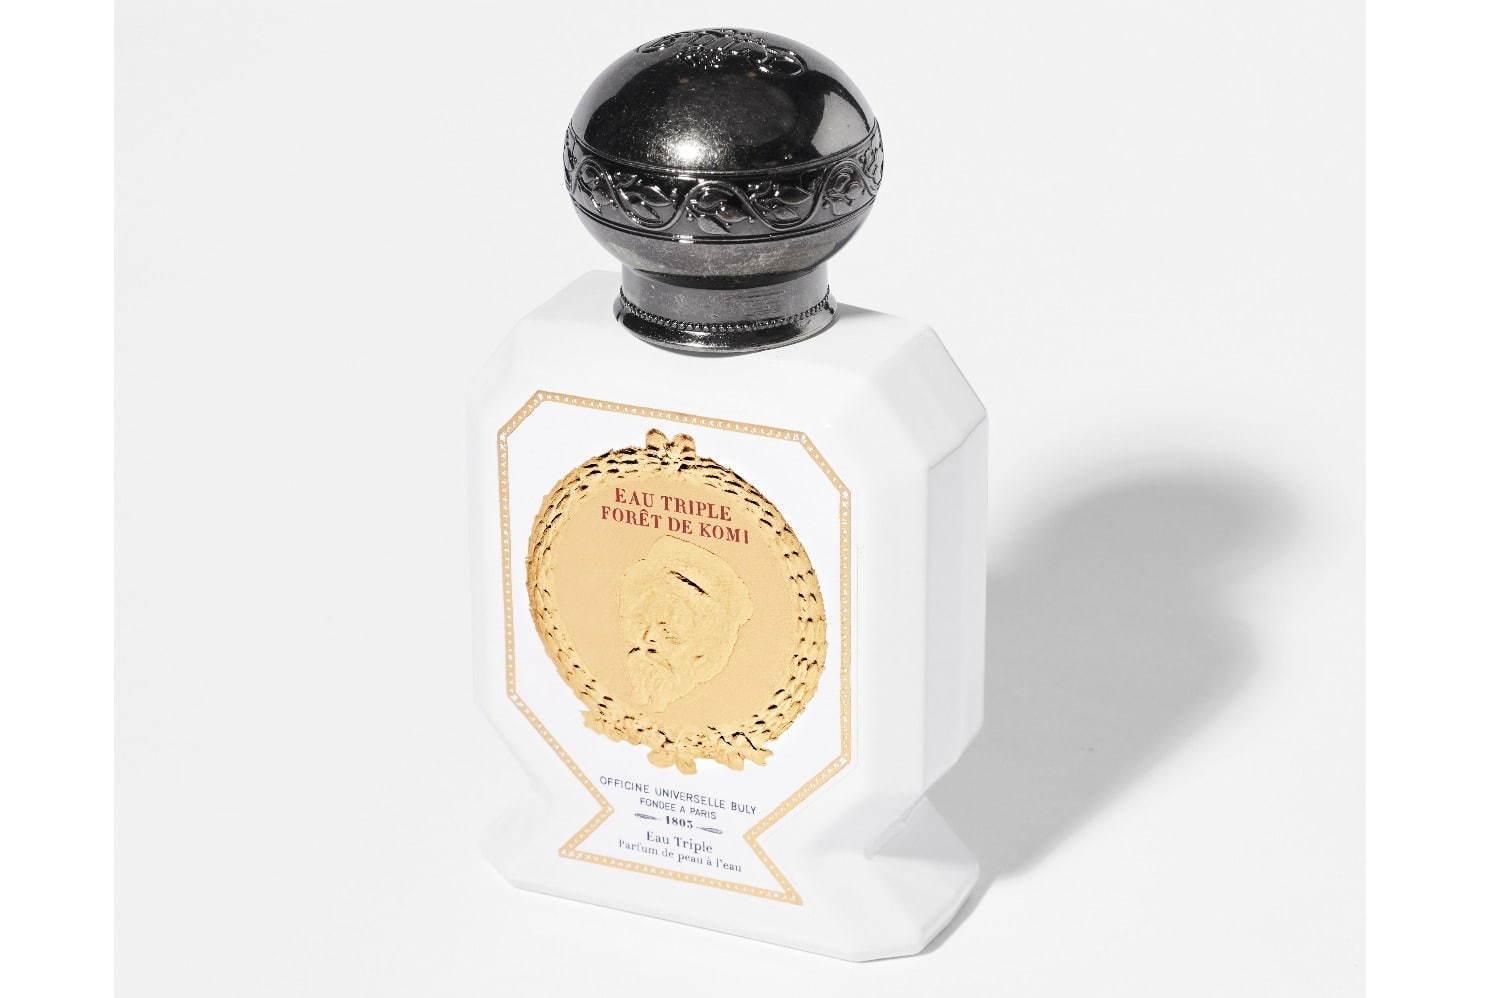 オフィシーヌ・ユニヴェルセル・ビュリーから新作香水2種、香りで“異国のノスタルジー”を感じて コピー